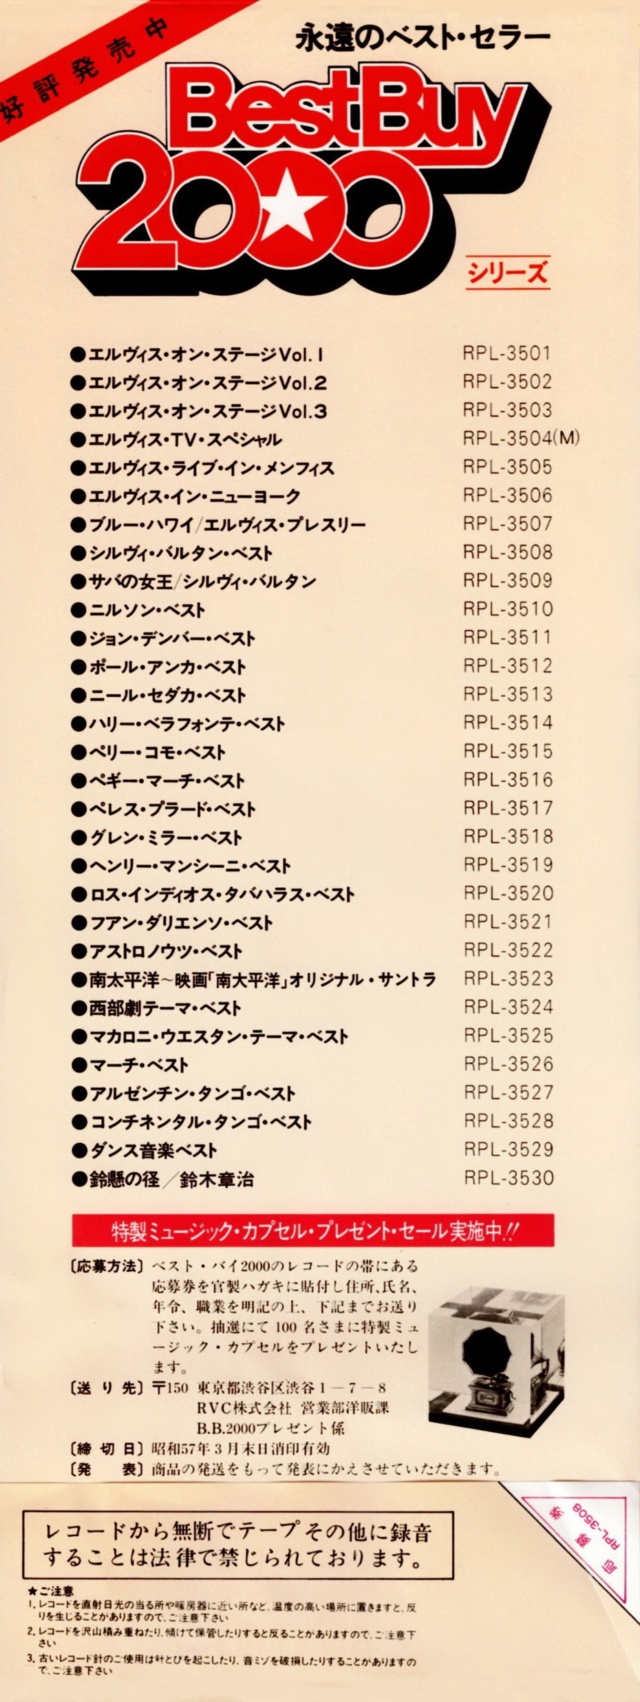 Discographie Japonaise - 4ème partie (33 T COMPILATION) - Page 15 Jpn_rp44